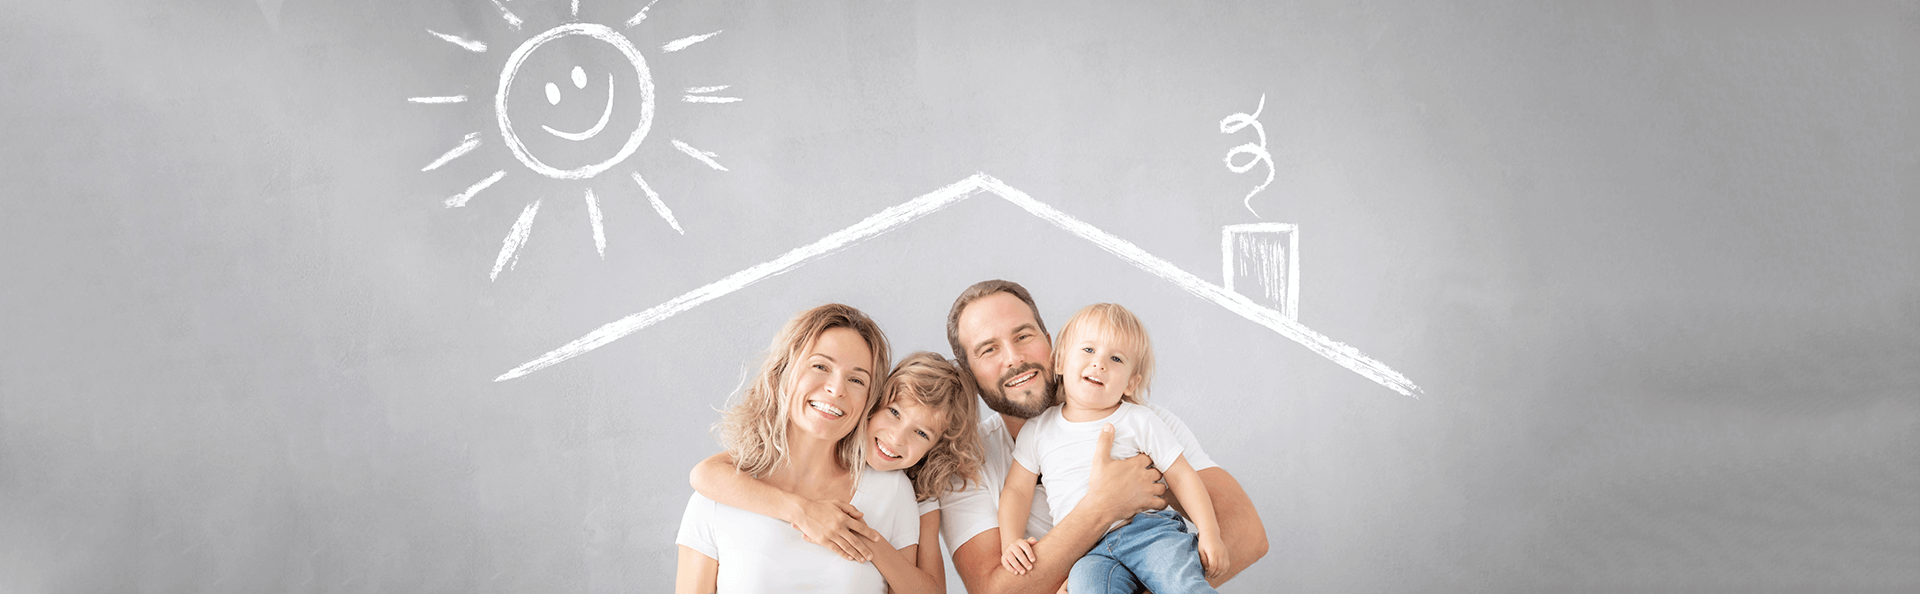 Uśmiechnięta rodzina z narysowanym kredą dachem oraz słońcem